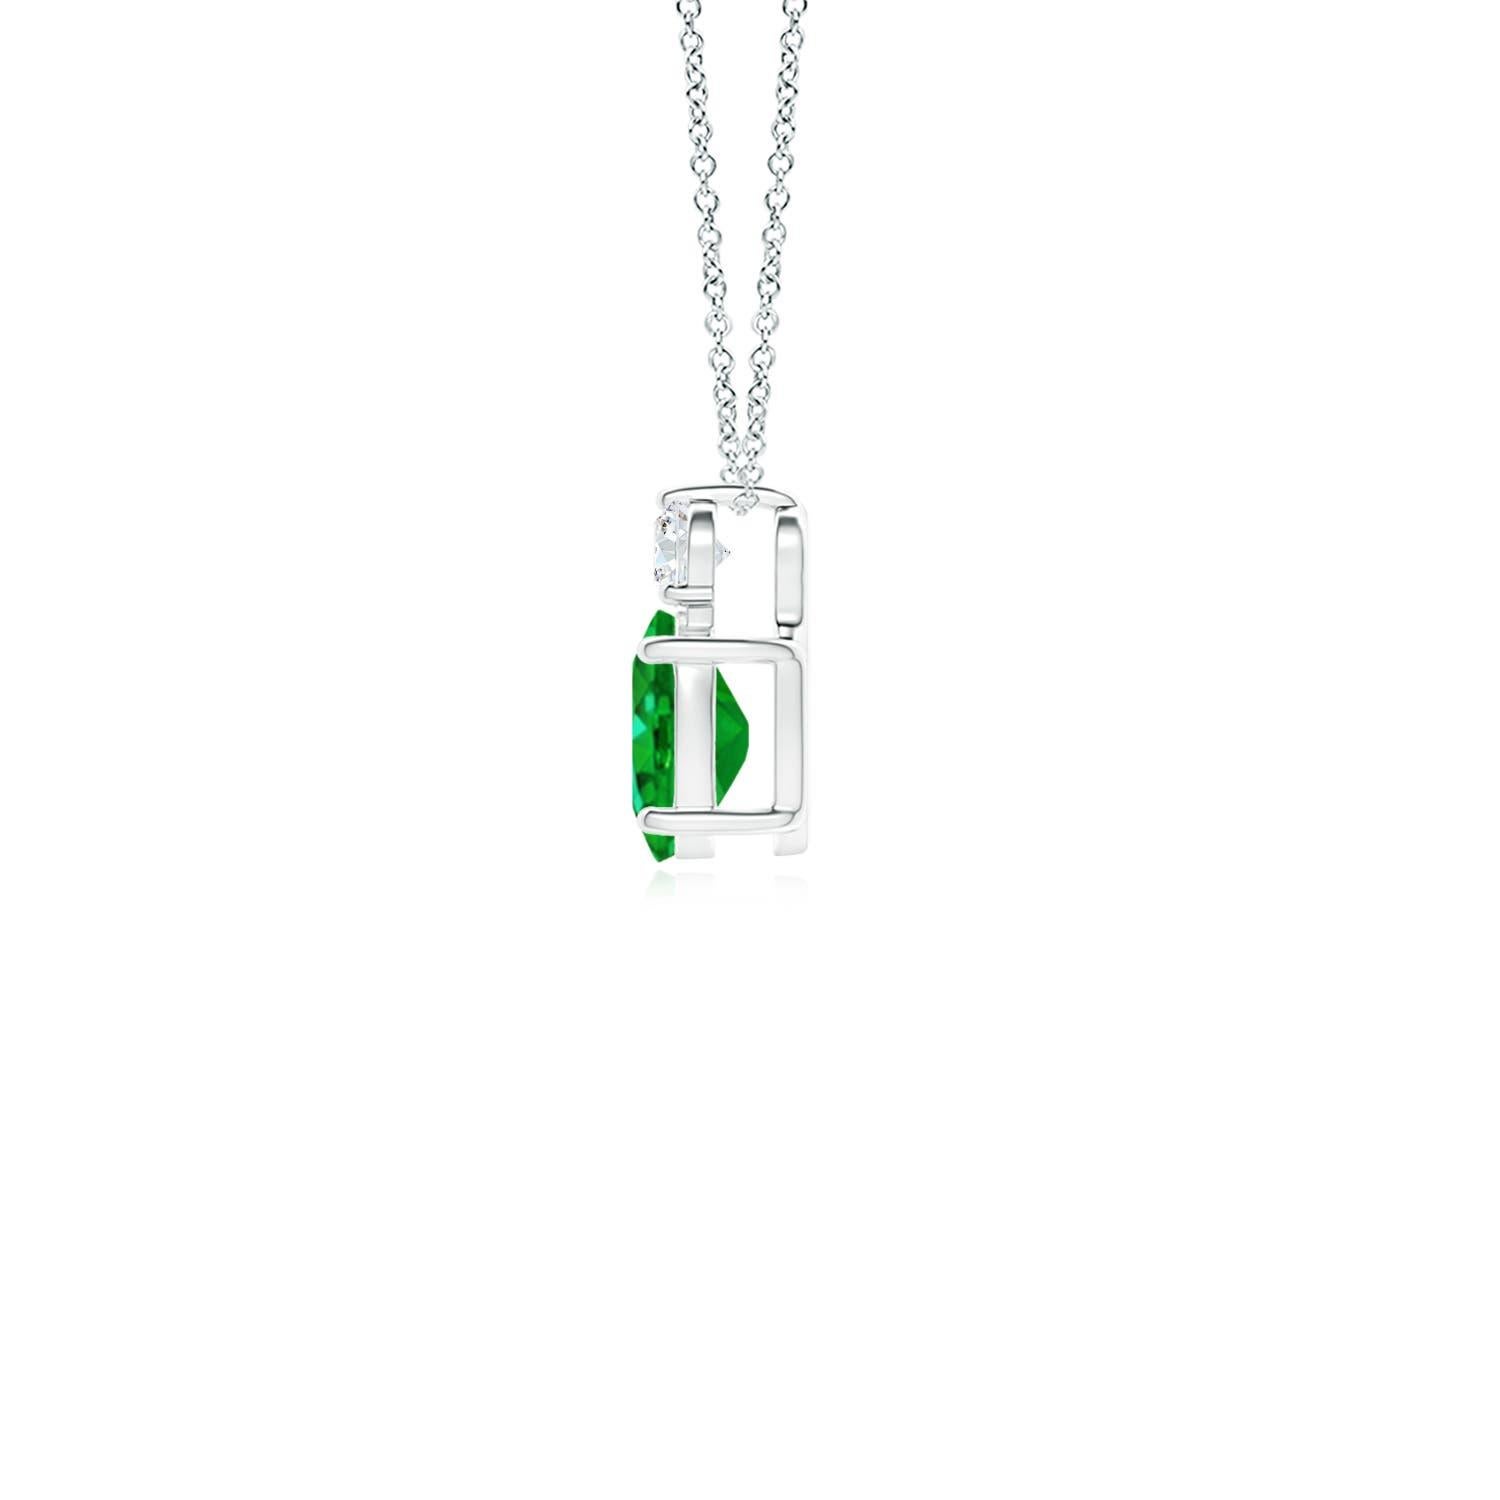 Dieser klassische Solitär-Smaragdanhänger ist aus Platin gefertigt und verkörpert Eleganz. Der sattgrüne ovale Smaragd wird von einem funkelnden Diamanten gekrönt, der für zusätzlichen Reiz sorgt. Die verschlungenen Schnörkel an den Seiten